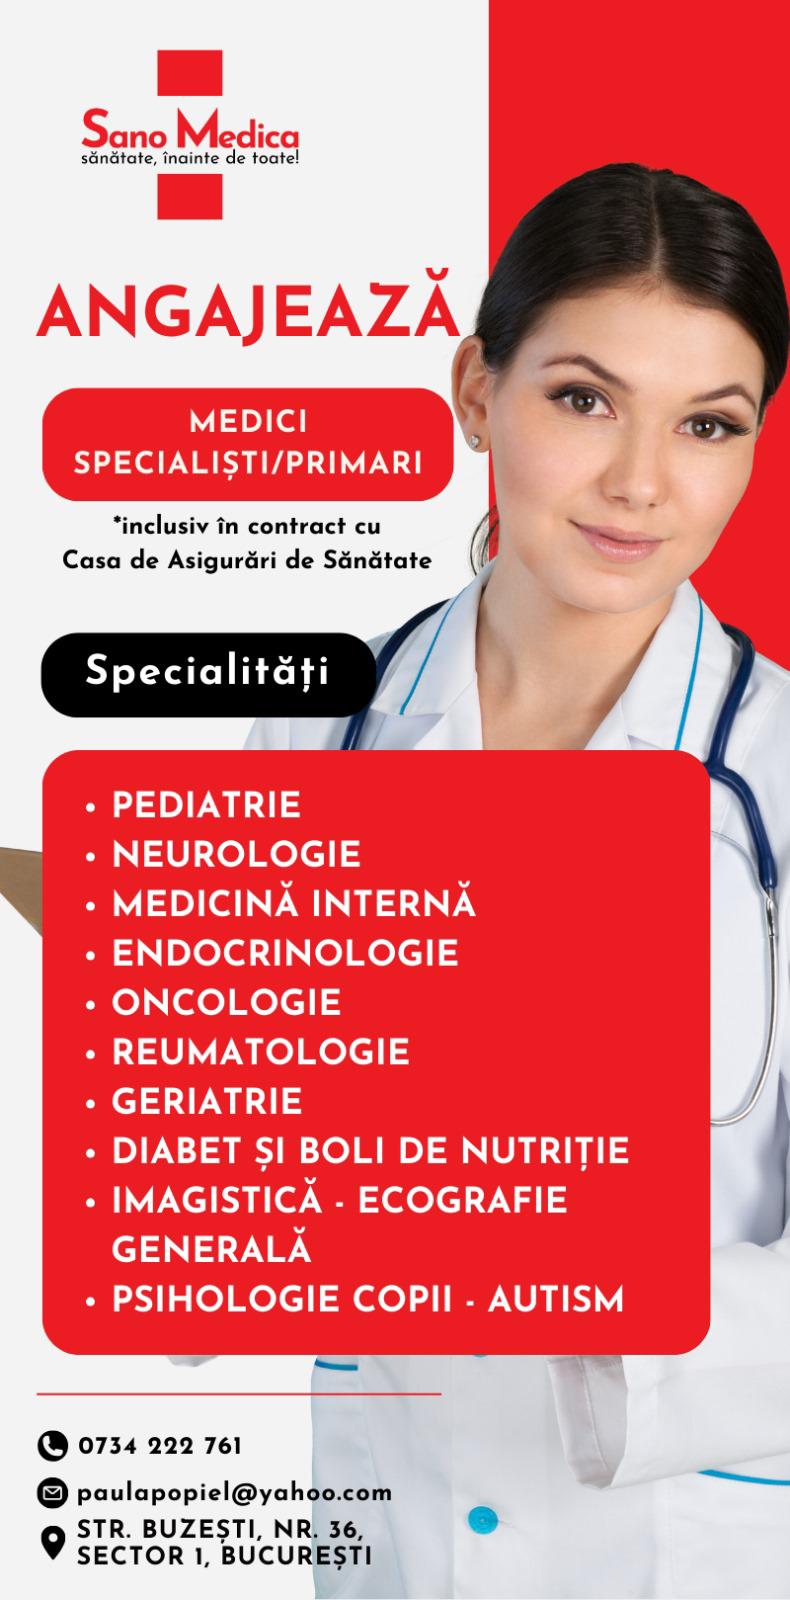 MEDICI Specialisti sau Primari cu diverse specialitati - Sano Medica